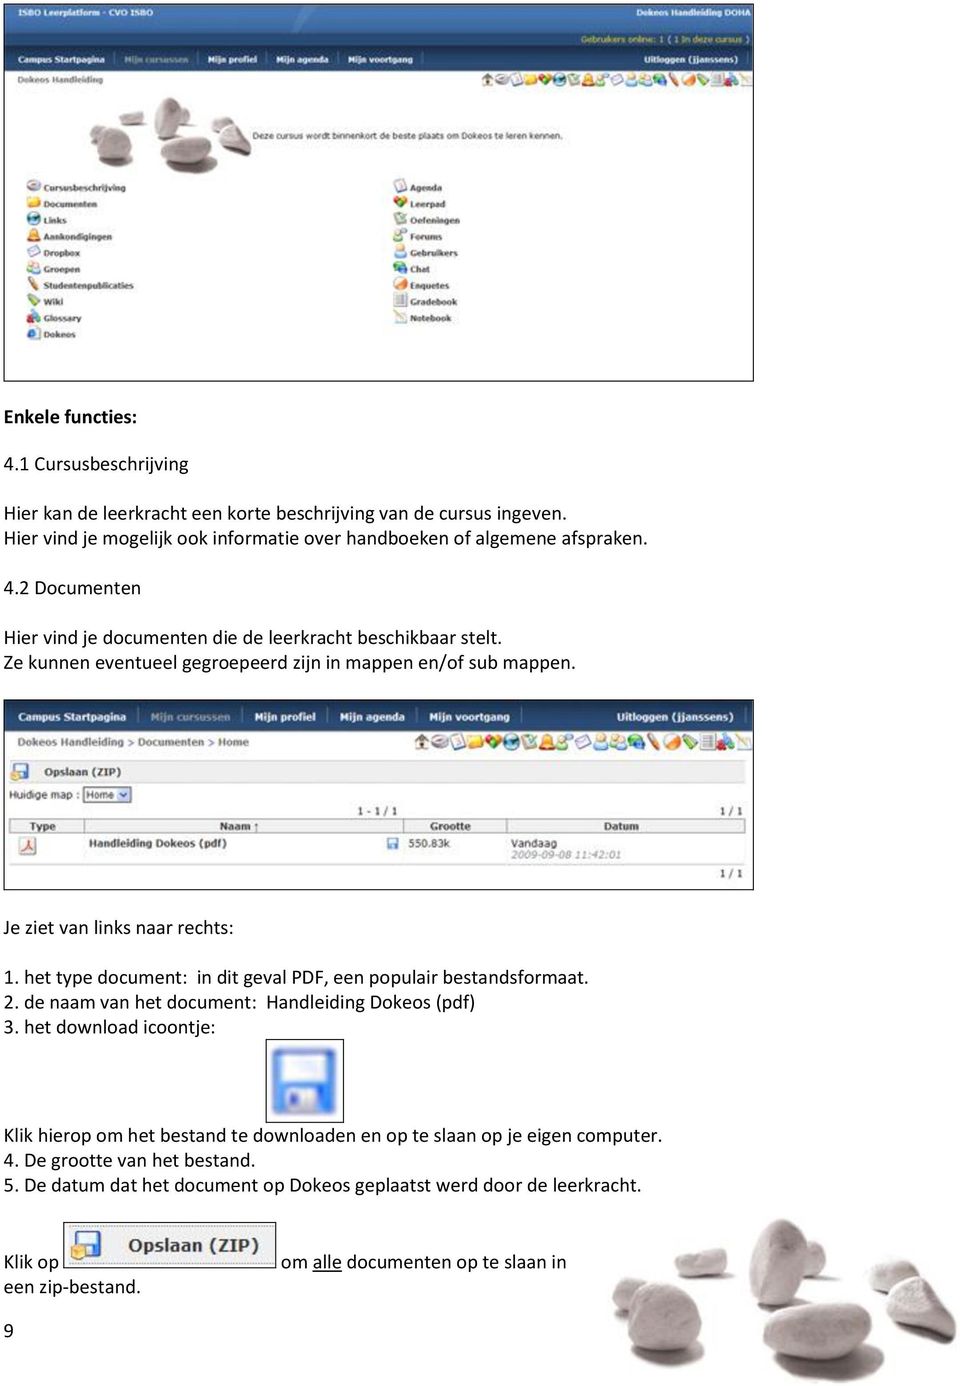 de naam van het document: Handleiding Dokeos (pdf) 3. het download icoontje: Klik hierop om het bestand te downloaden en op te slaan op je eigen computer. 4. De grootte van het bestand. 5.